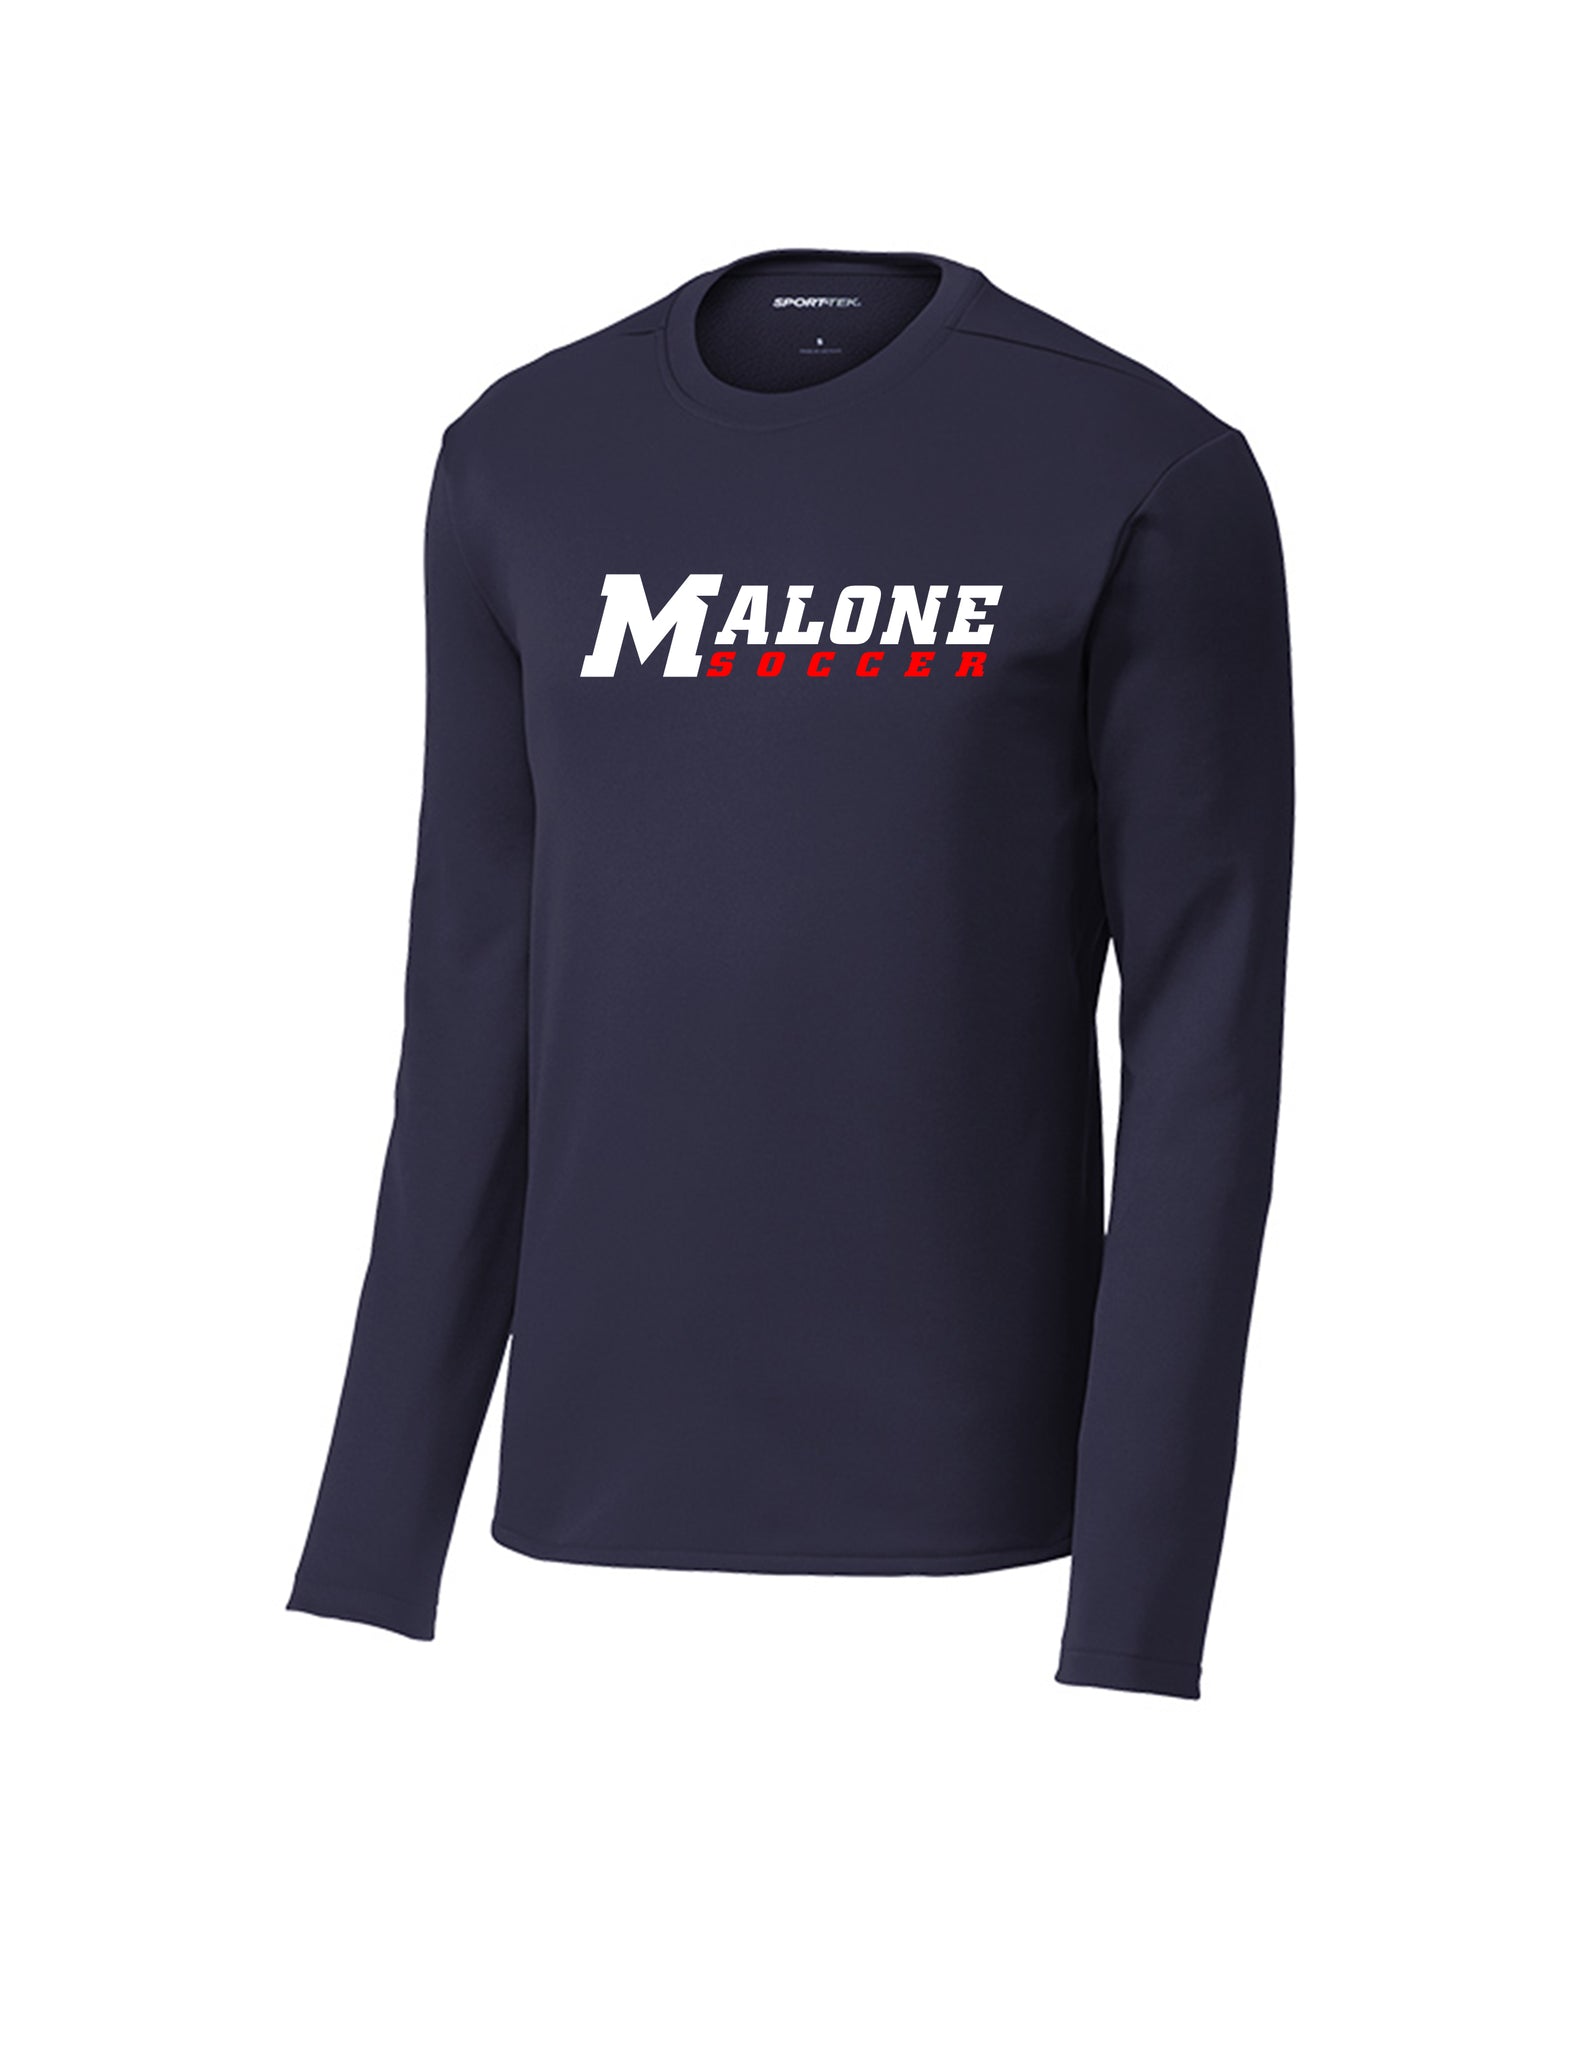 Malone Men's Soccer Unisex Premium Crewneck